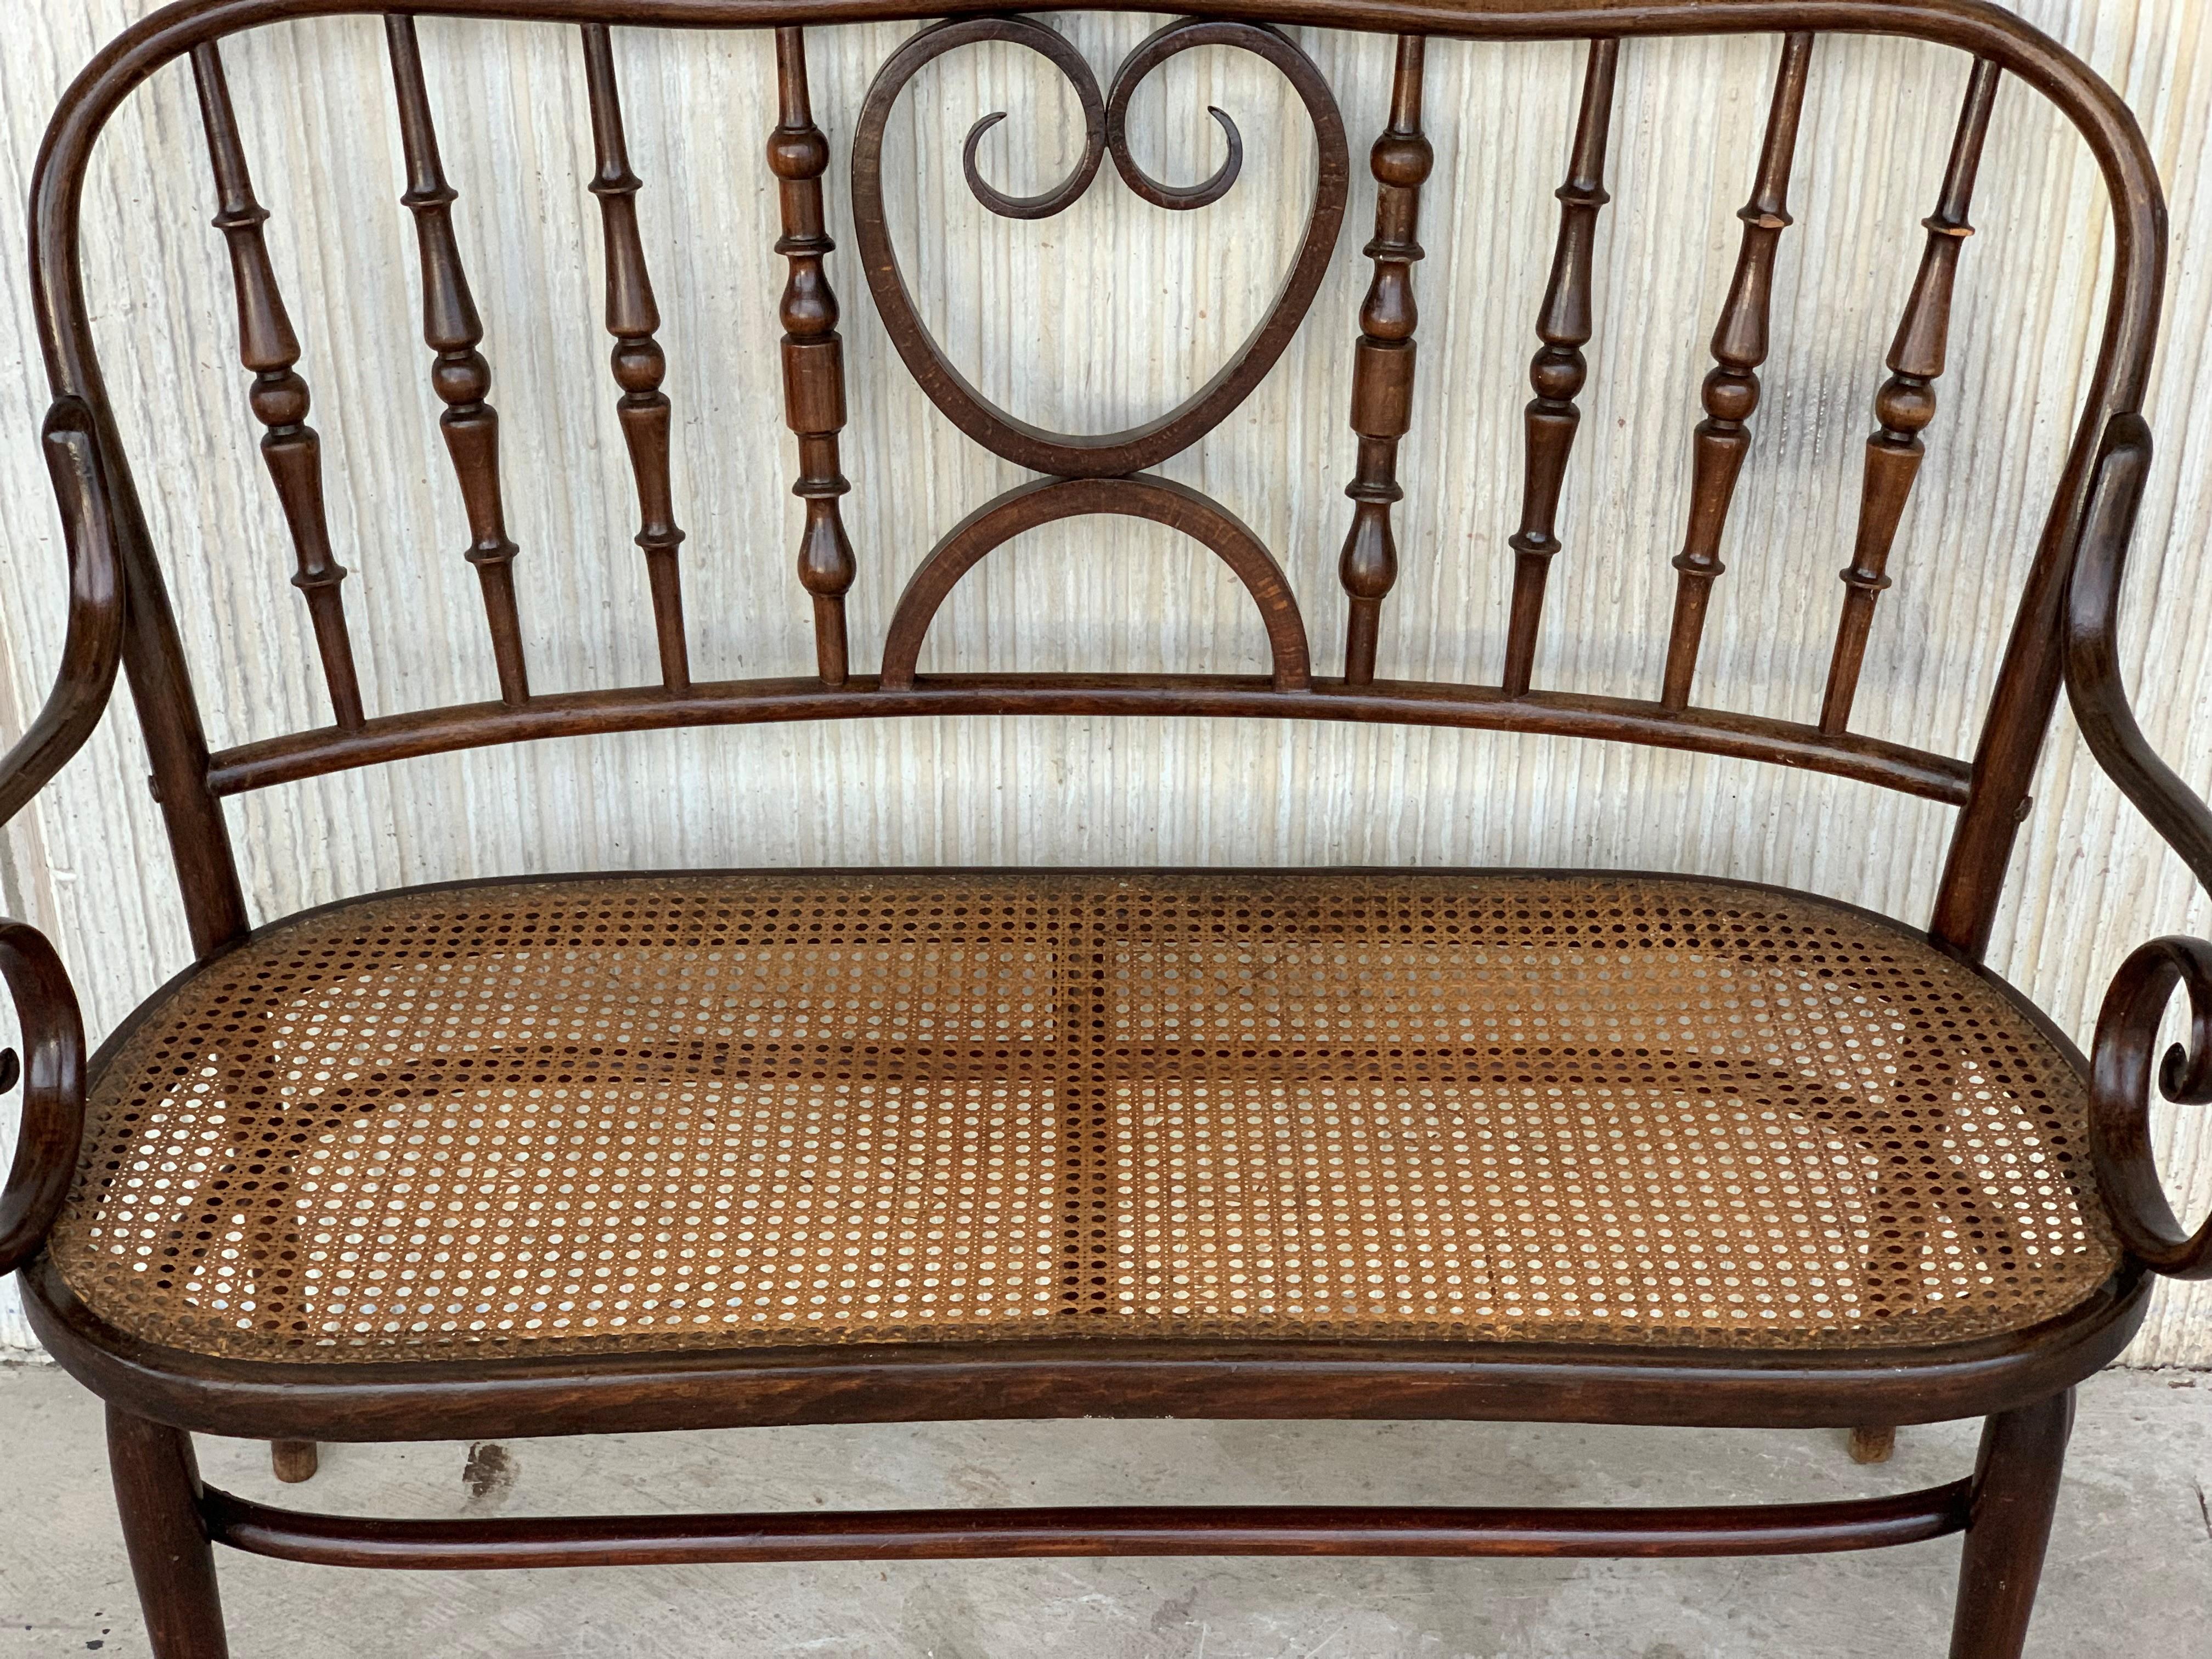 bugholzsofa im Thonet-Stil, 20. Jahrhundert, um 1925, Sitzfläche mit Rohrgeflecht

Dieses Sofa ist sehr schwer und stabil.